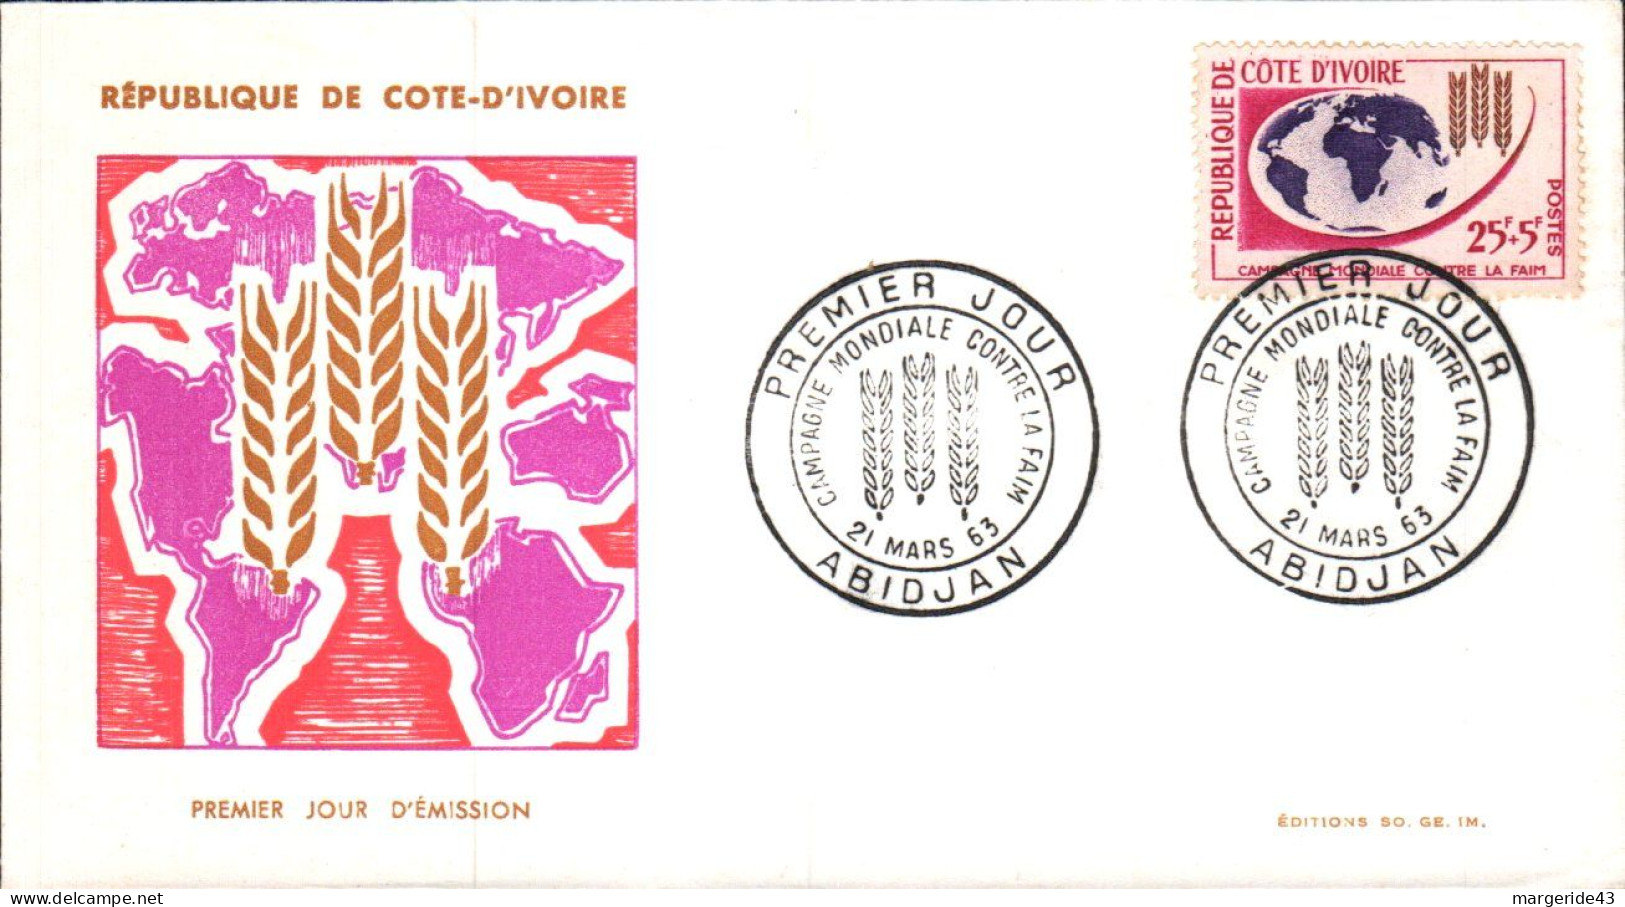 COTE D'IVOIRE FDC 1963 CAMPAGNE CONTRE LA FAIM - Ivory Coast (1960-...)